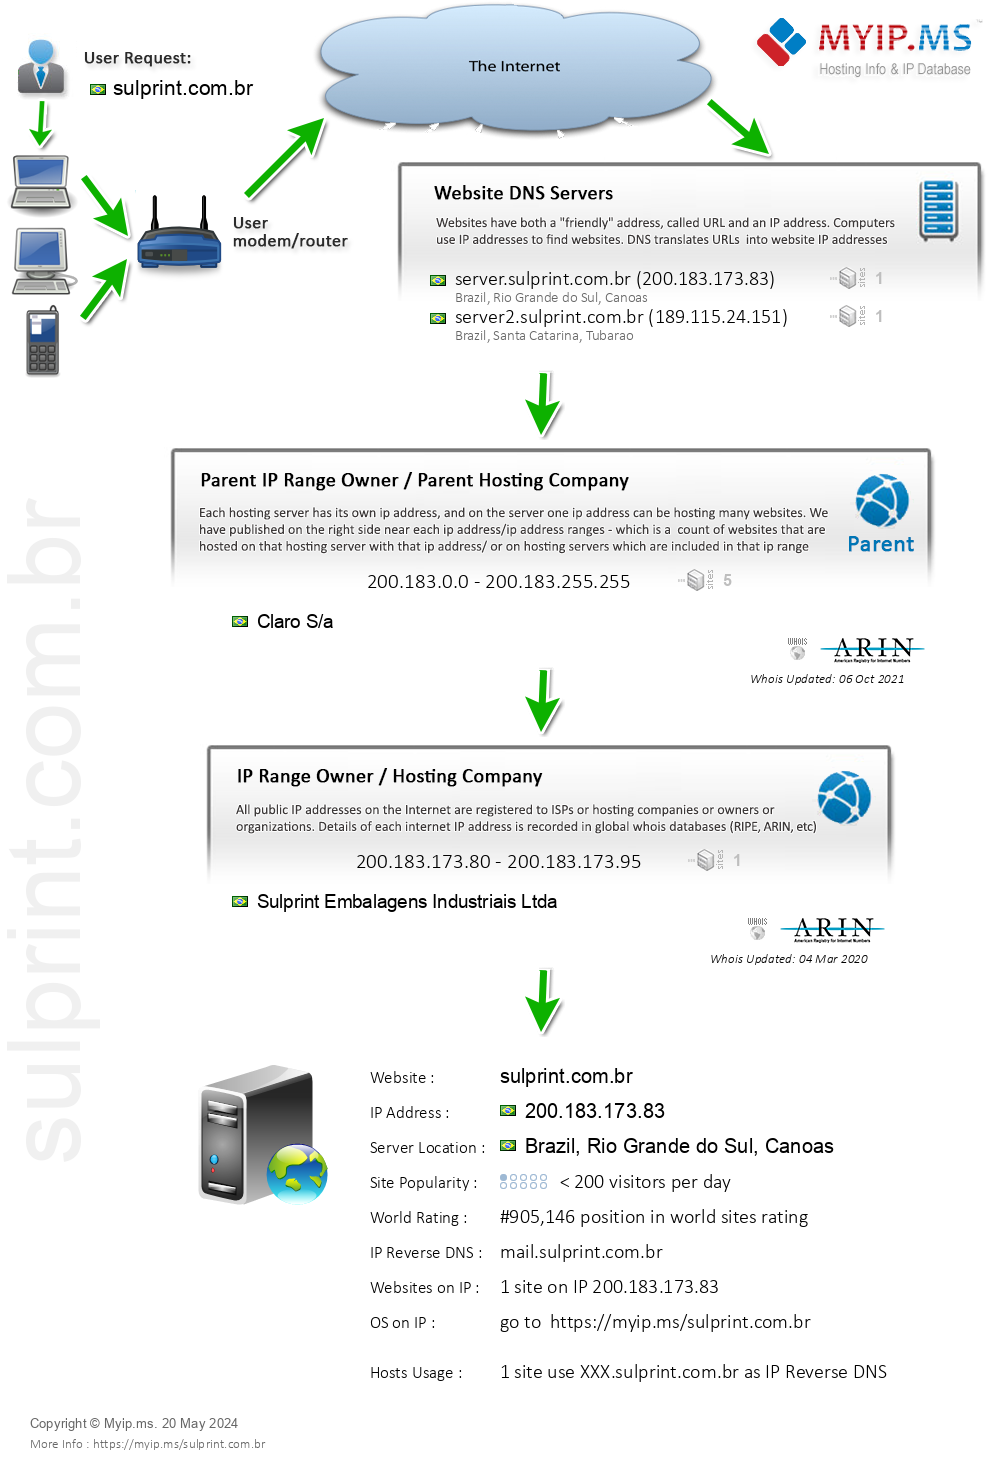 Sulprint.com.br - Website Hosting Visual IP Diagram